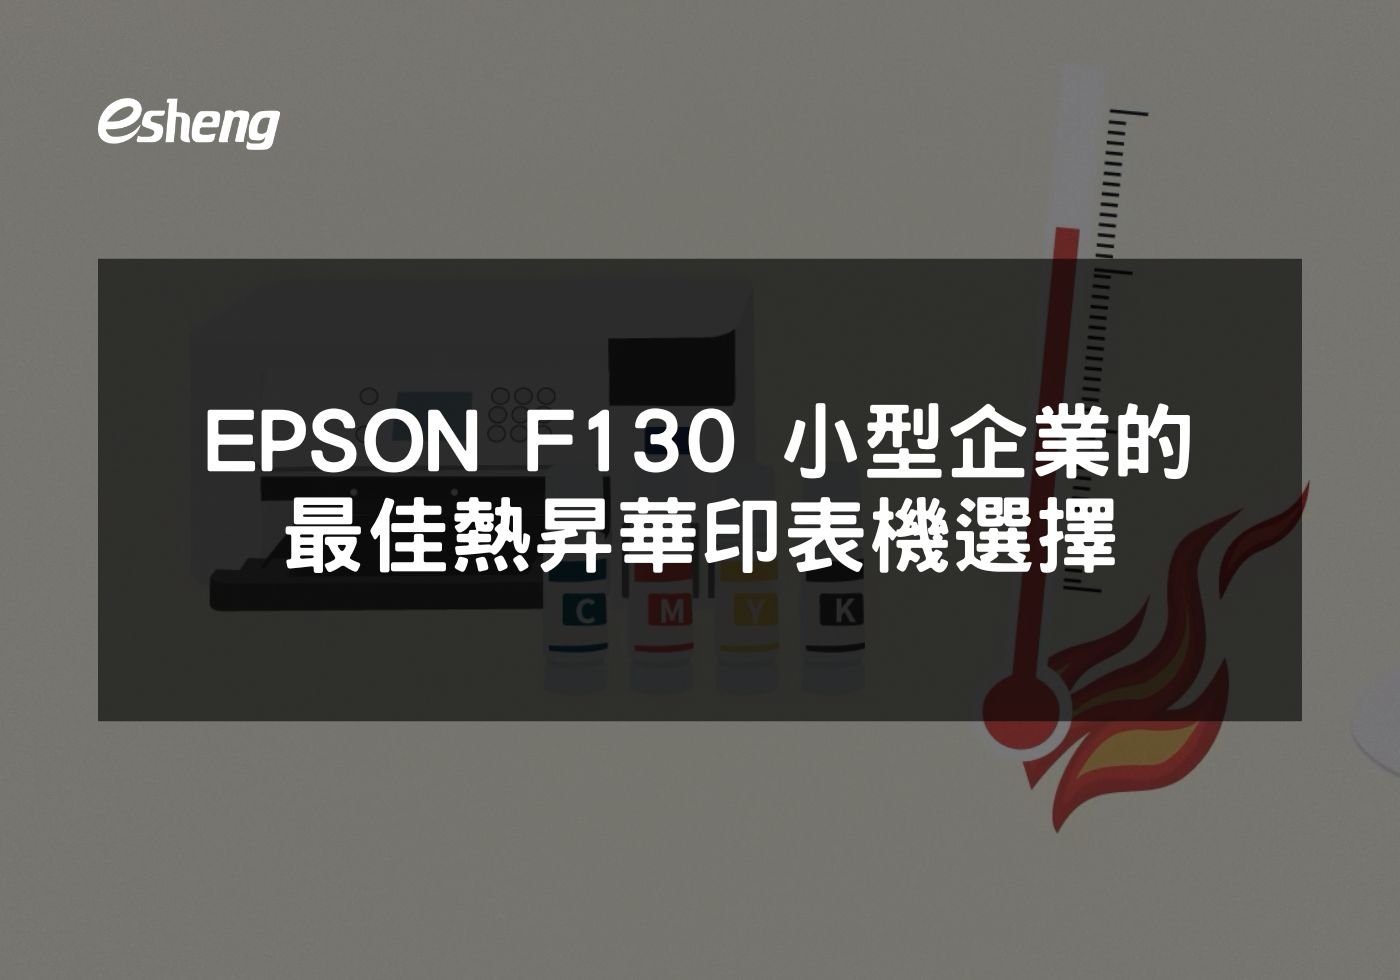 您目前正在查看 EPSON F130 小型企業的最佳熱昇華印表機選擇